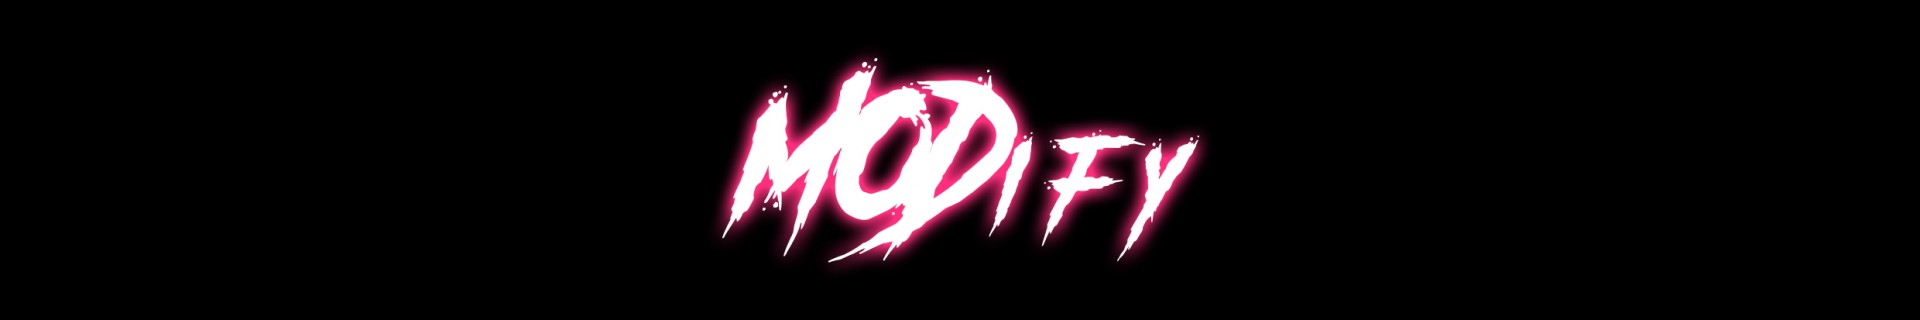 MODify profile cover